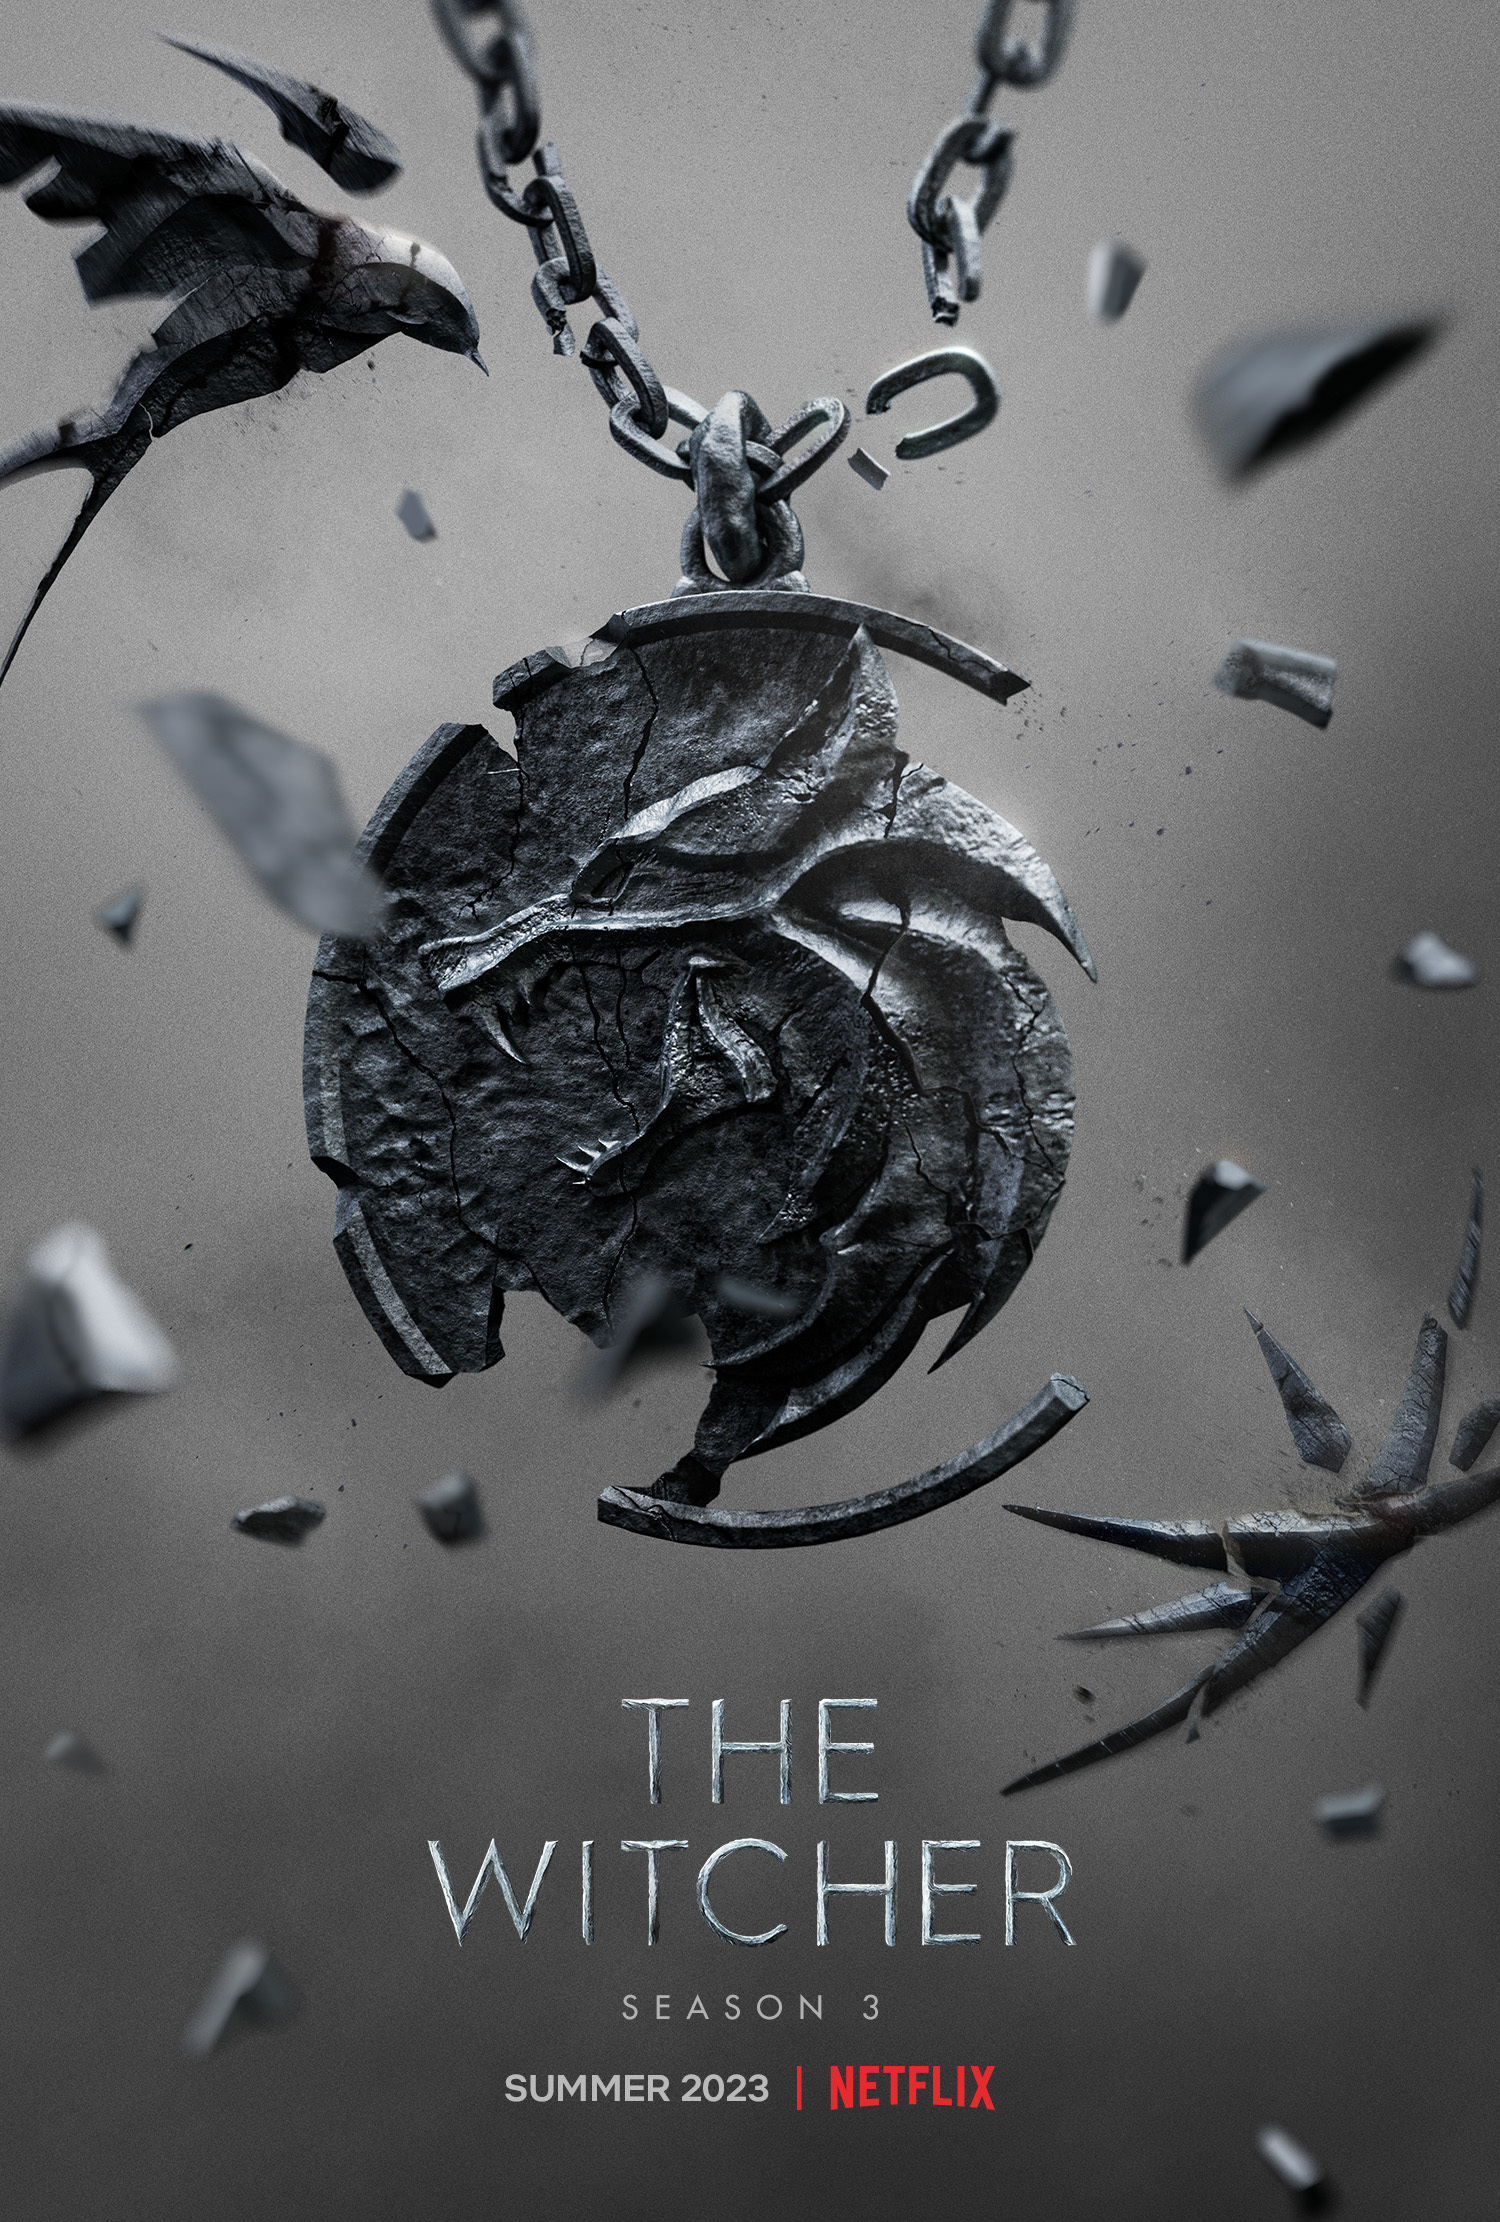 The Witcher sin tredje sesong kommer til Netflix sommeren 2023 - Gamereactor Norge